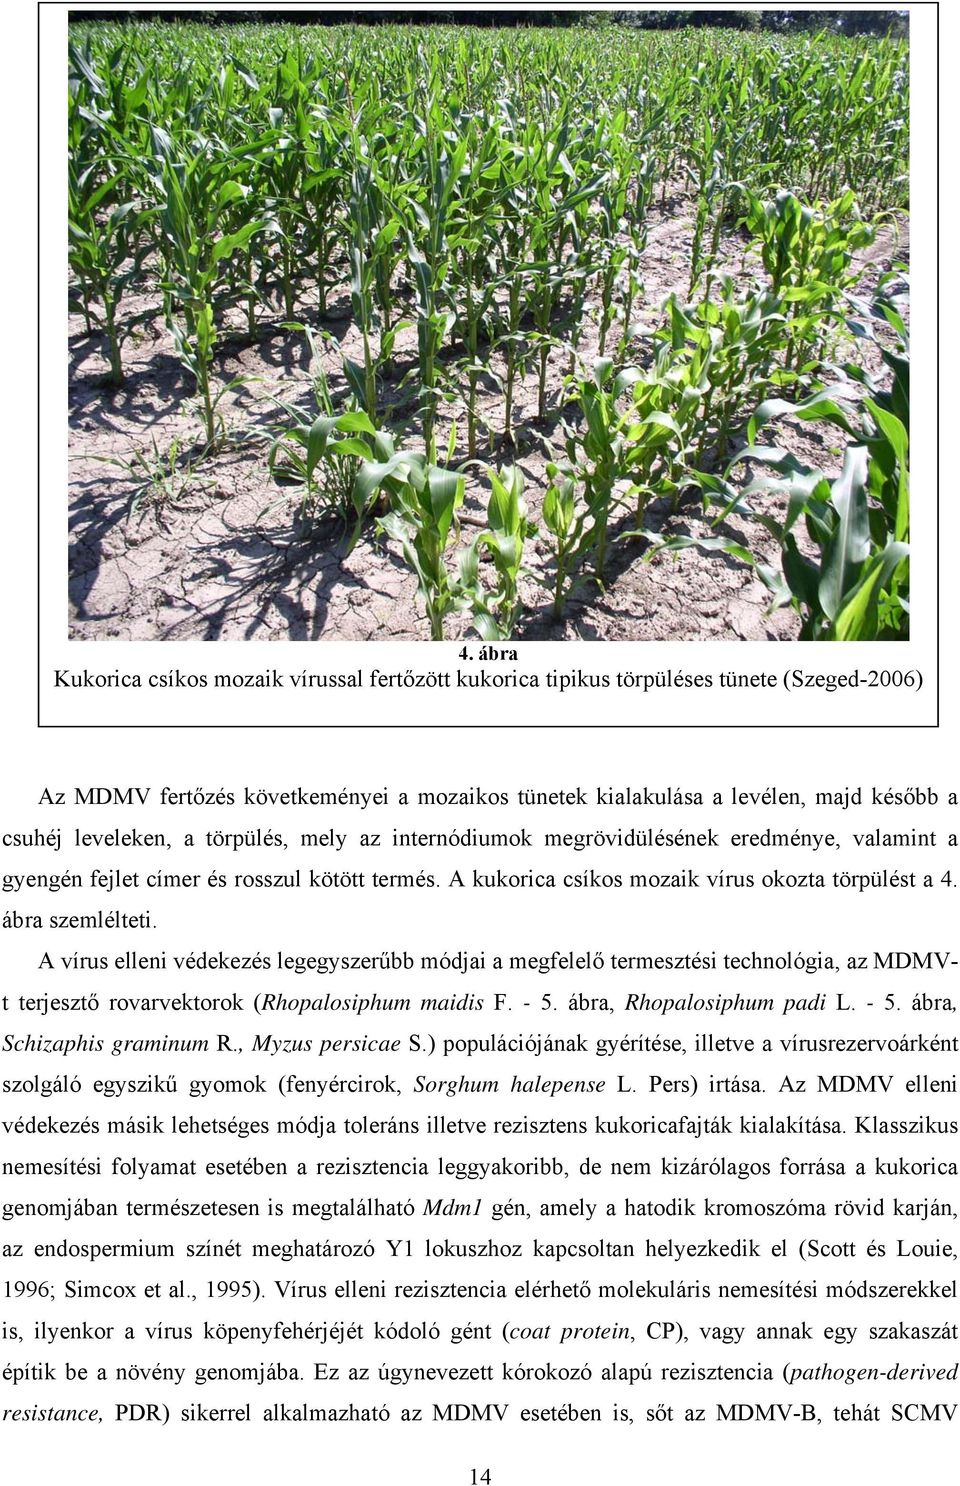 ábra szemlélteti. A vírus elleni védekezés legegyszerűbb módjai a megfelelő termesztési technológia, az MDMVt terjesztő rovarvektorok (Rhopalosiphum maidis F. - 5. ábra, Rhopalosiphum padi L. - 5. ábra, Schizaphis graminum R.